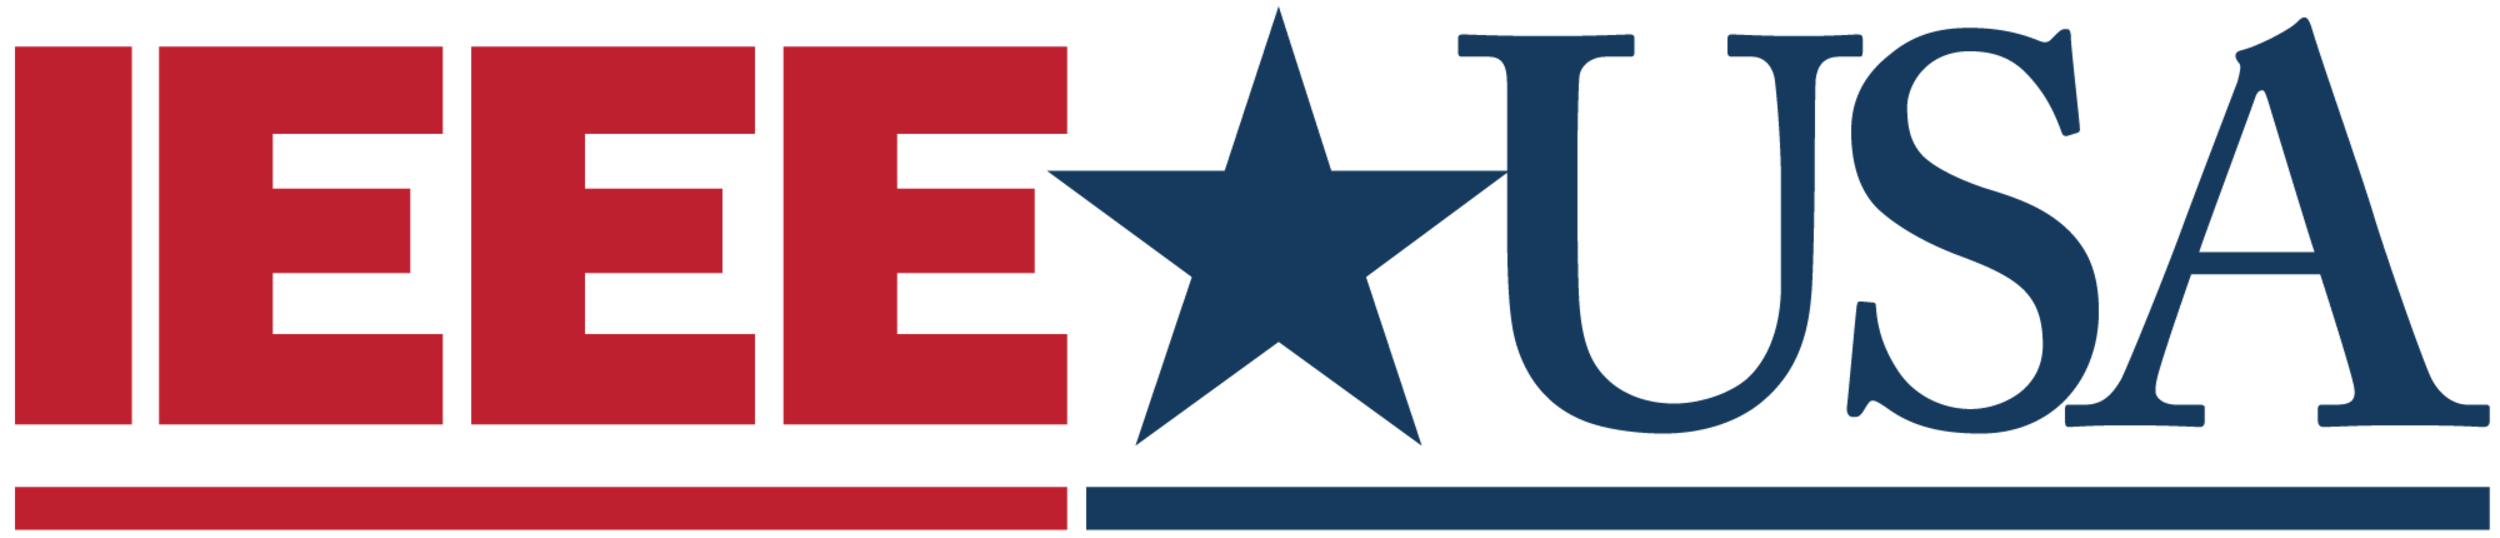 IEEE-USA Logo